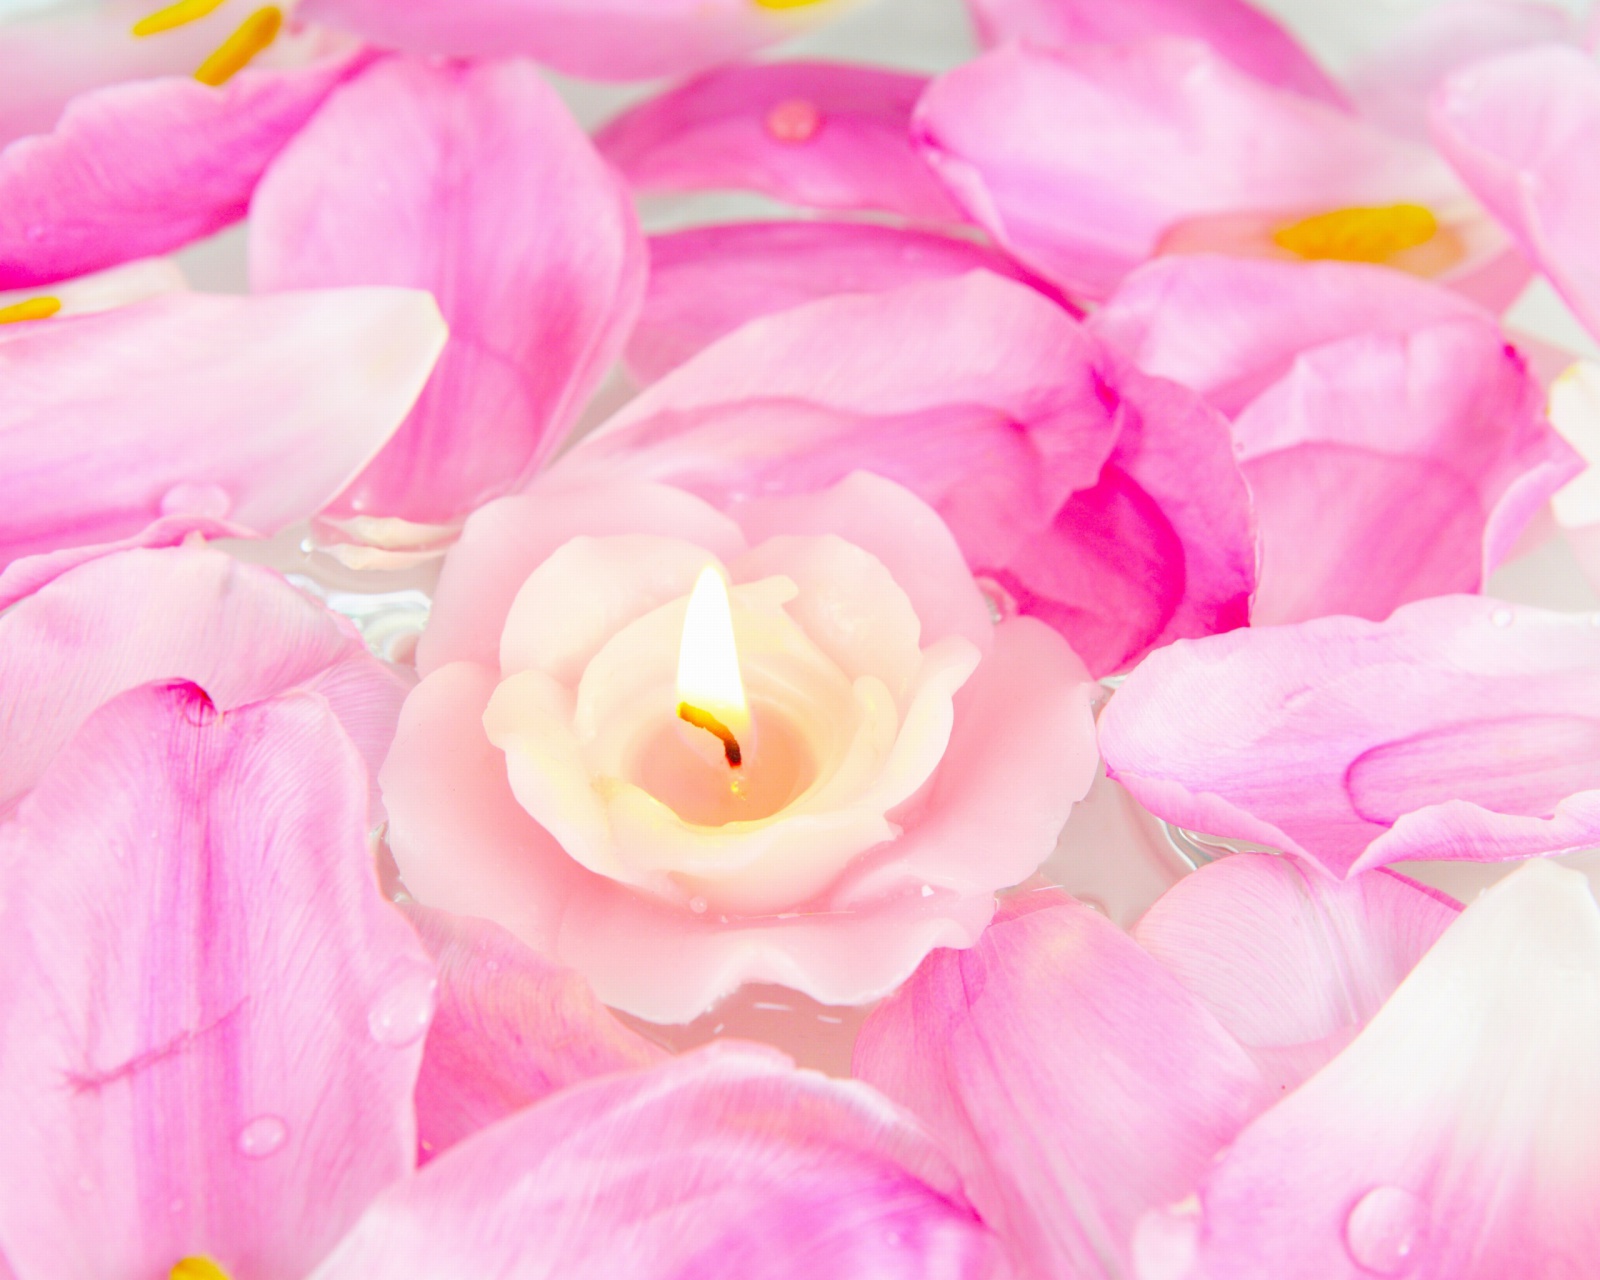 Candle on lotus petals screenshot #1 1600x1280